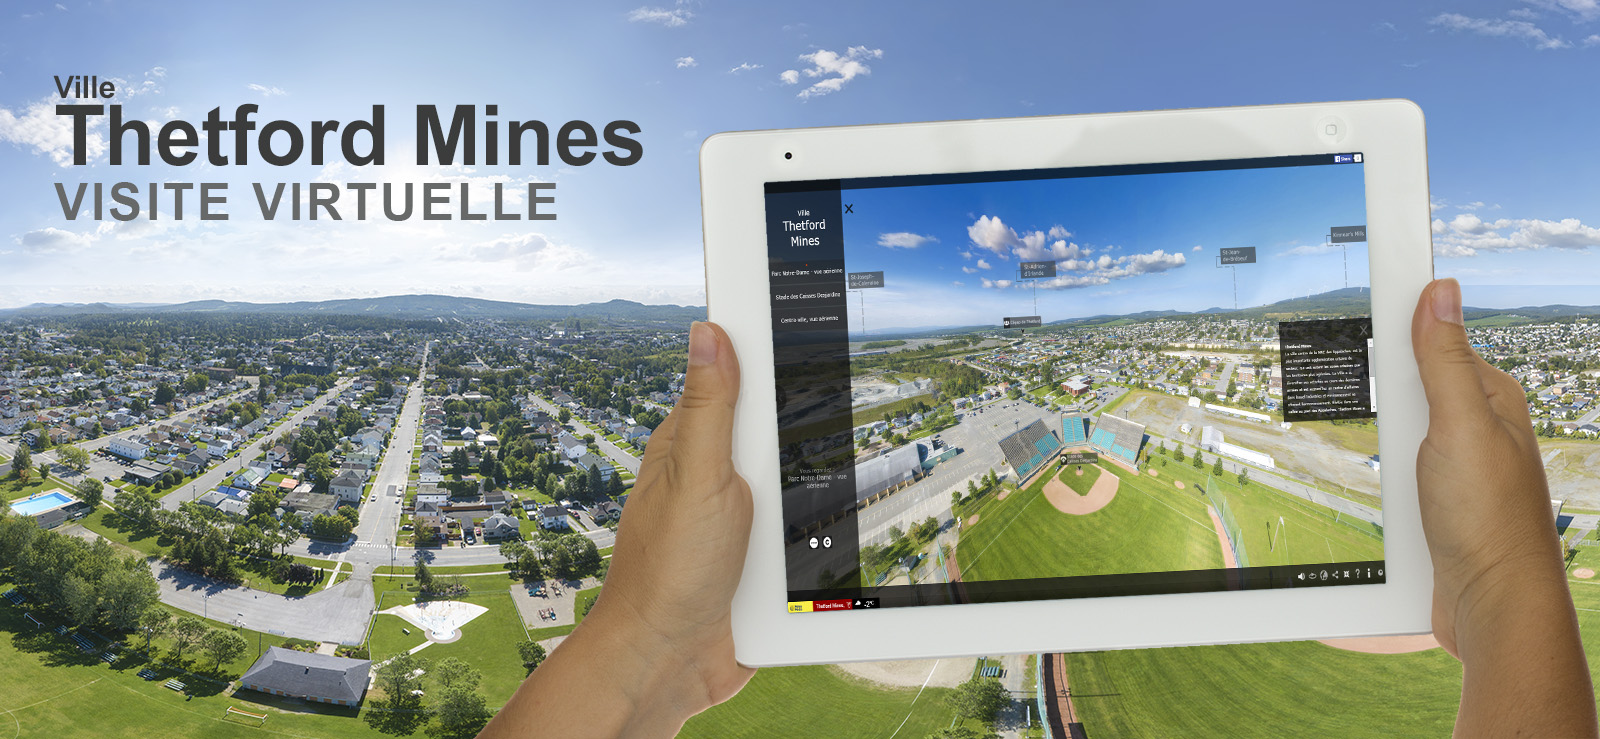 Présentation de la visite virtuelle de la ville de Thetford Mines en Chaudières-Appalaches